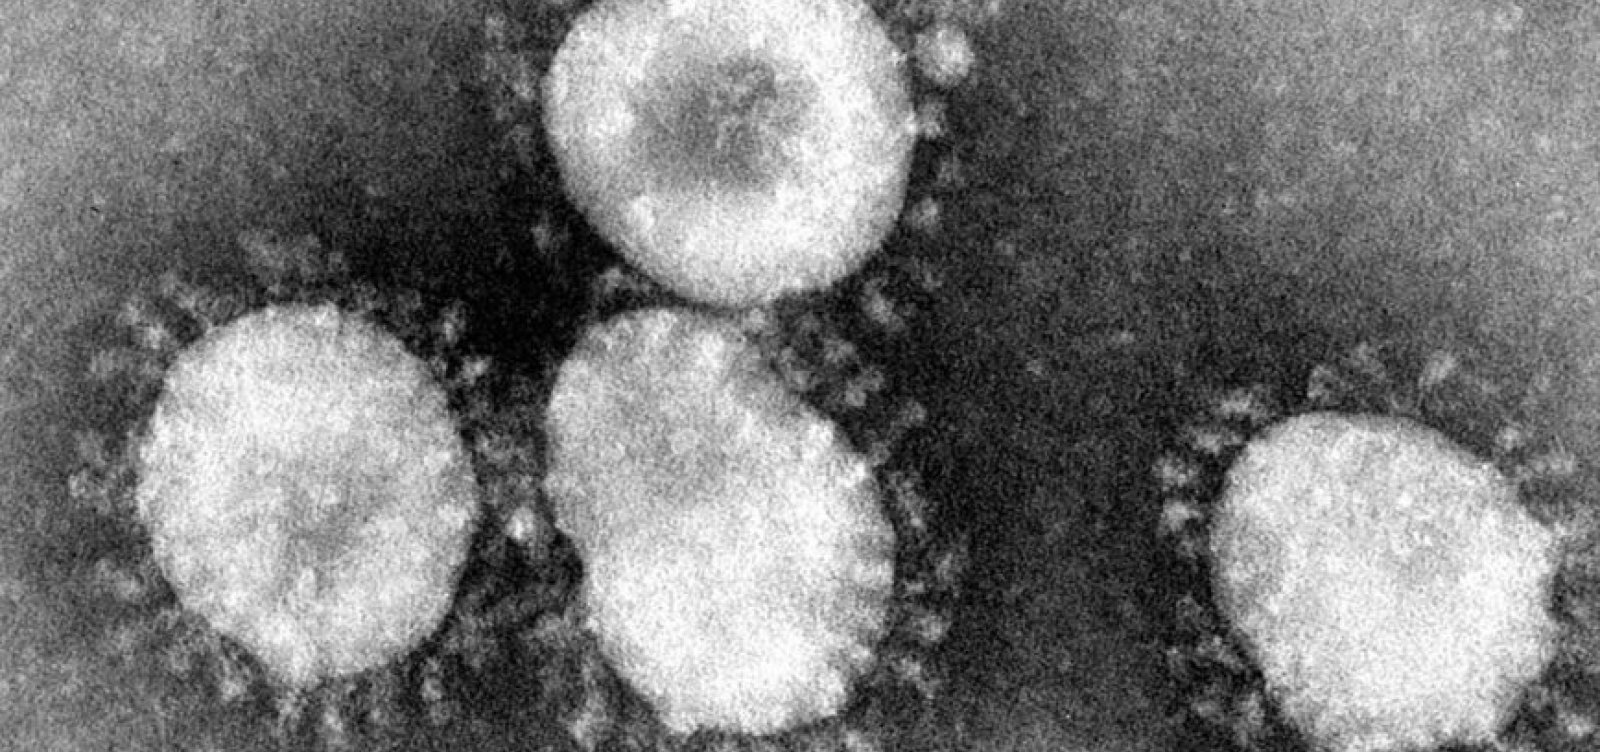 Sobe para 12 o número de mortos na Itália em surto de coronavírus